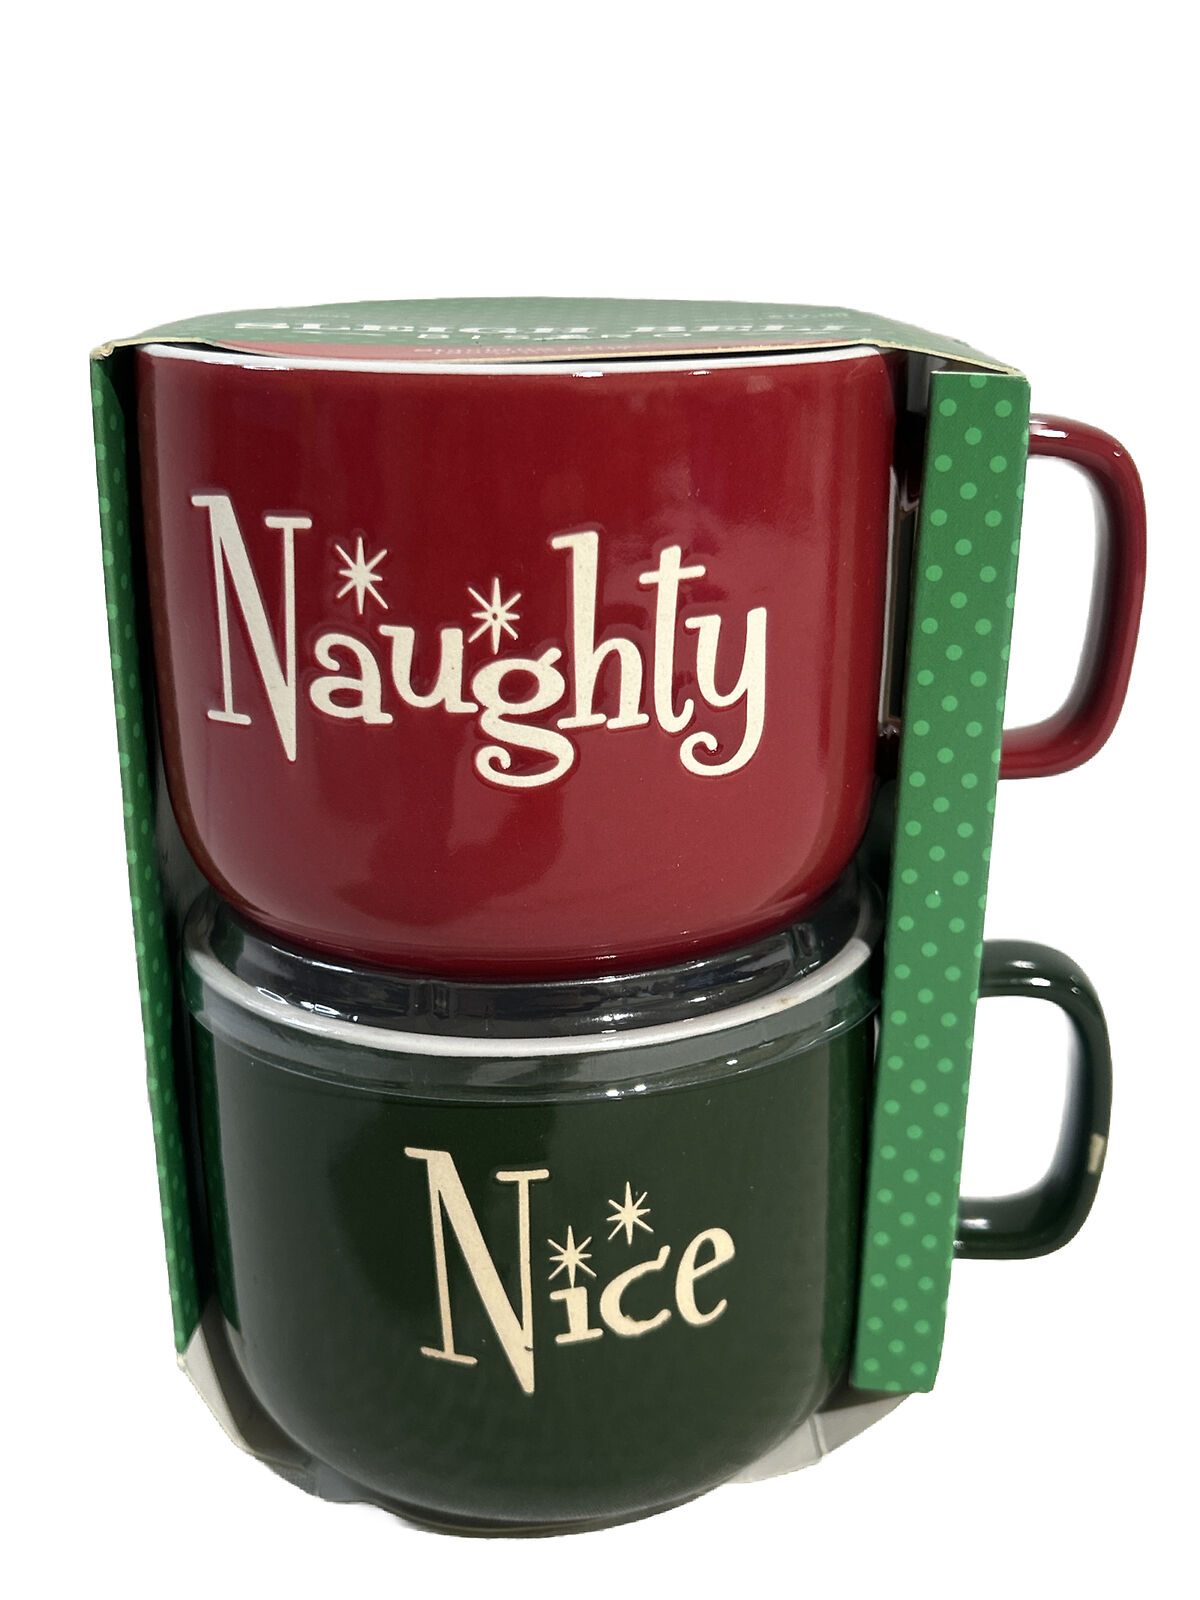 2014 Sleigh Bell Stacking Mugs 13oz 2pc NIB NAUGHTY AND NICE MUGS